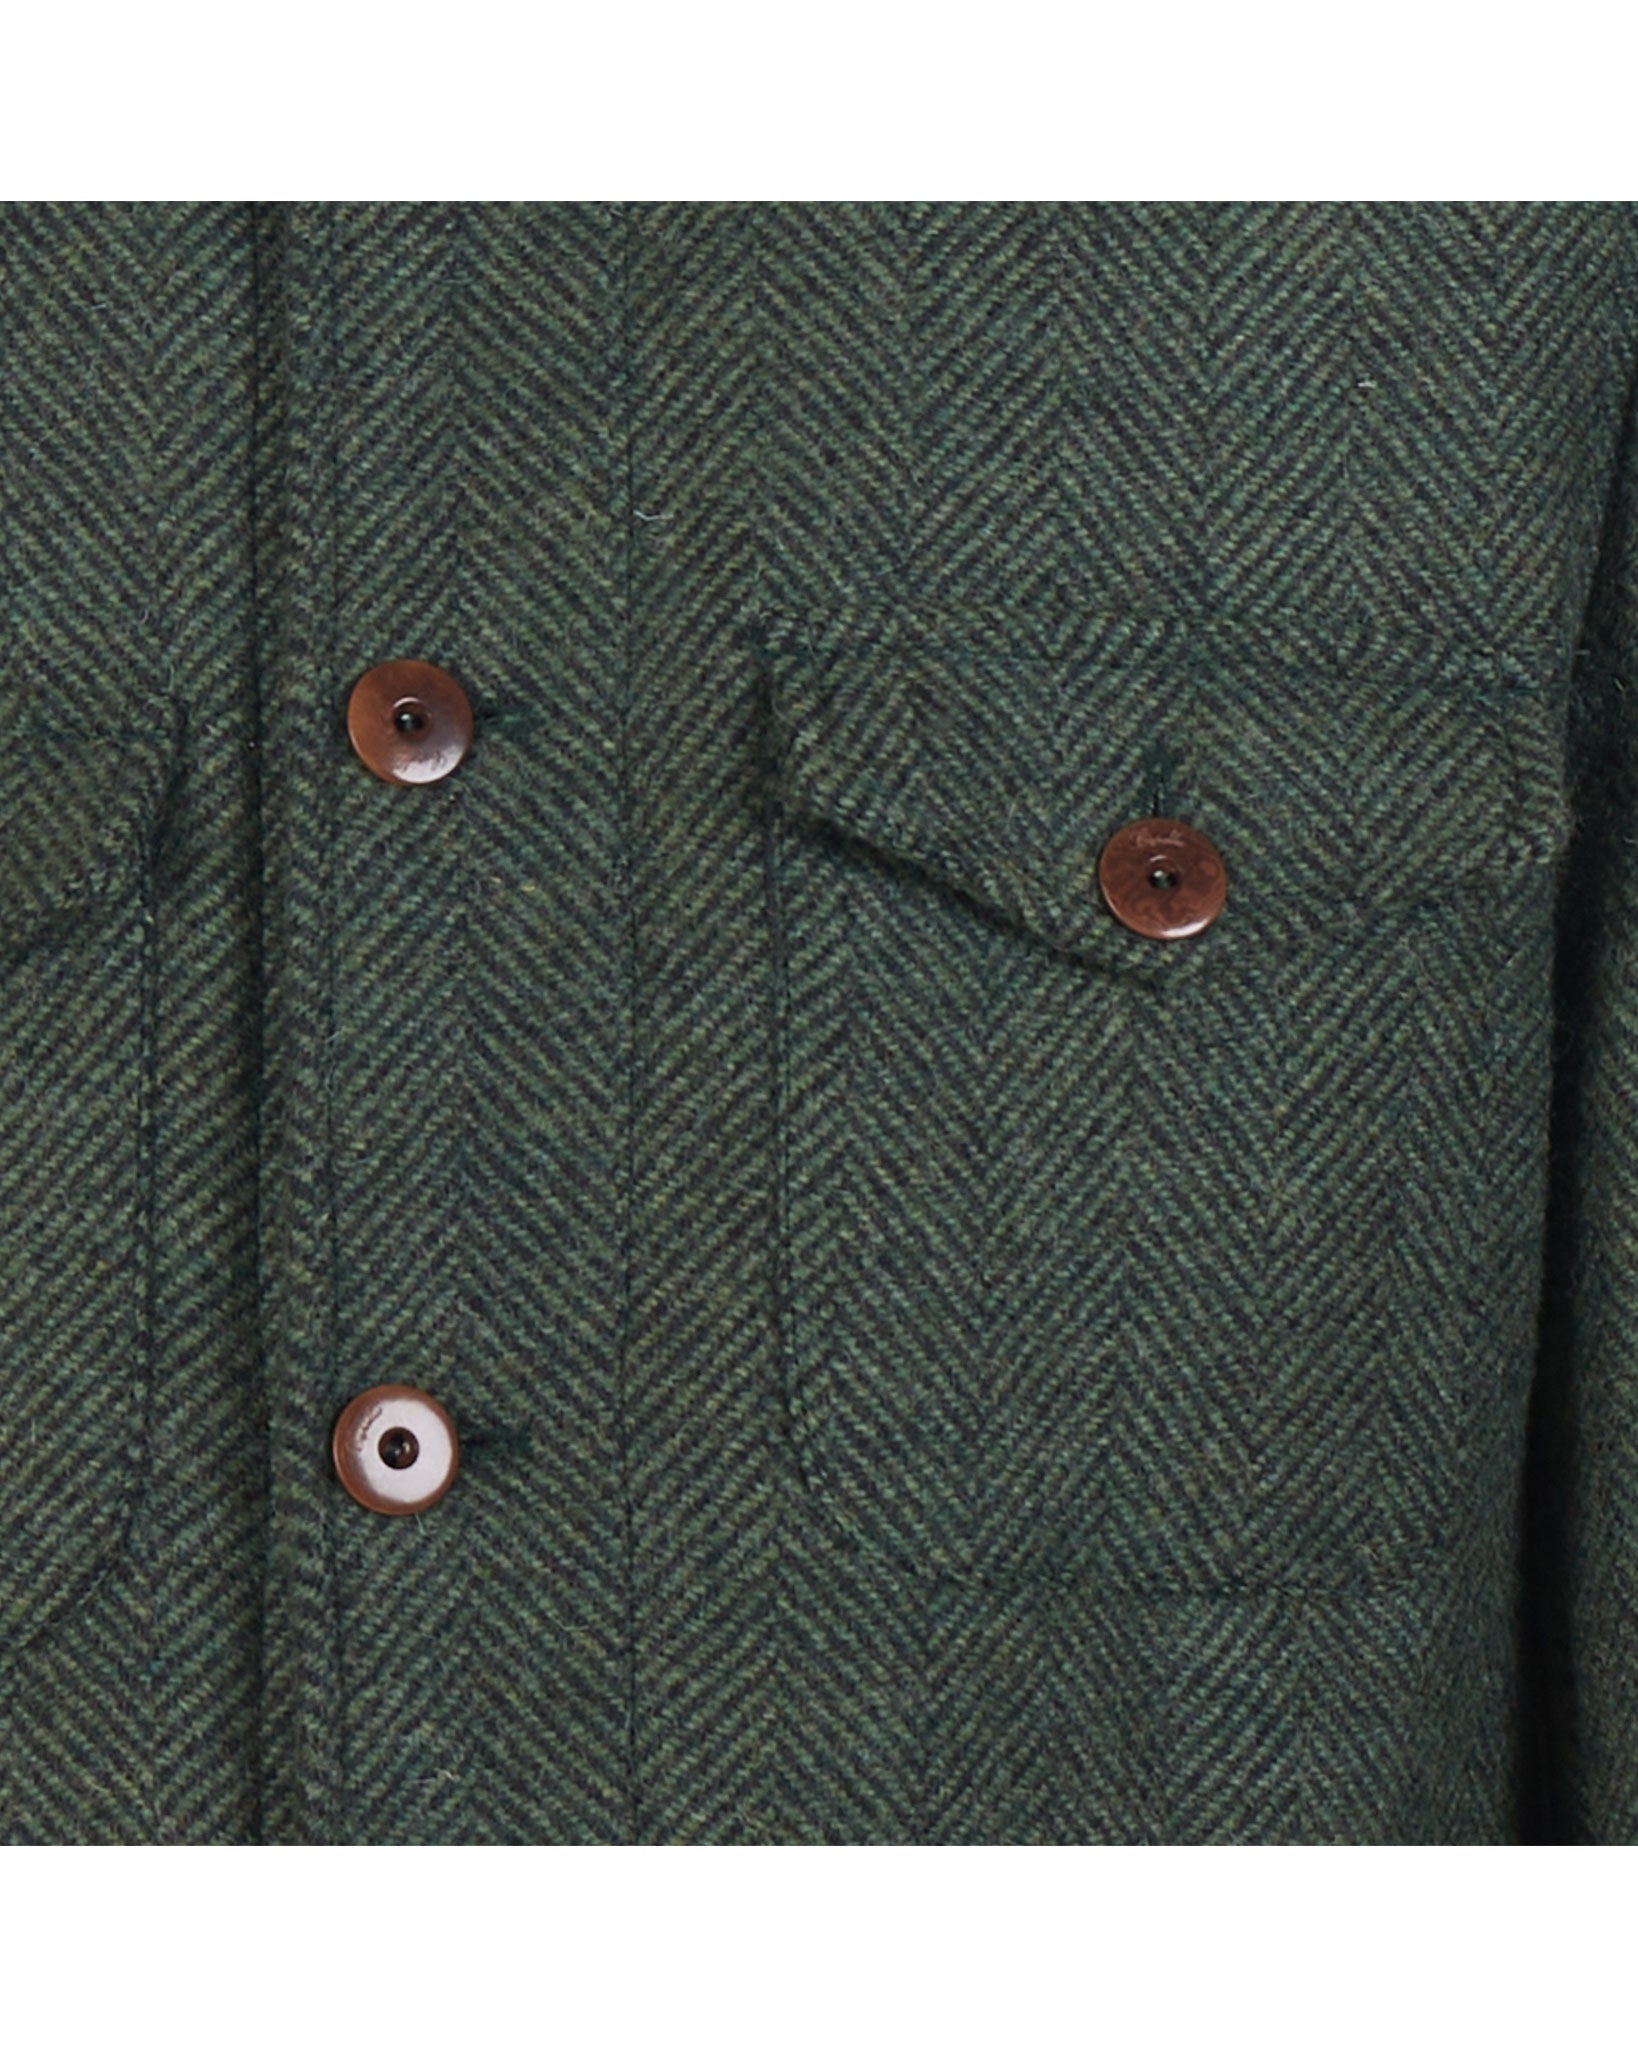 Field Jacket in herringbone wool